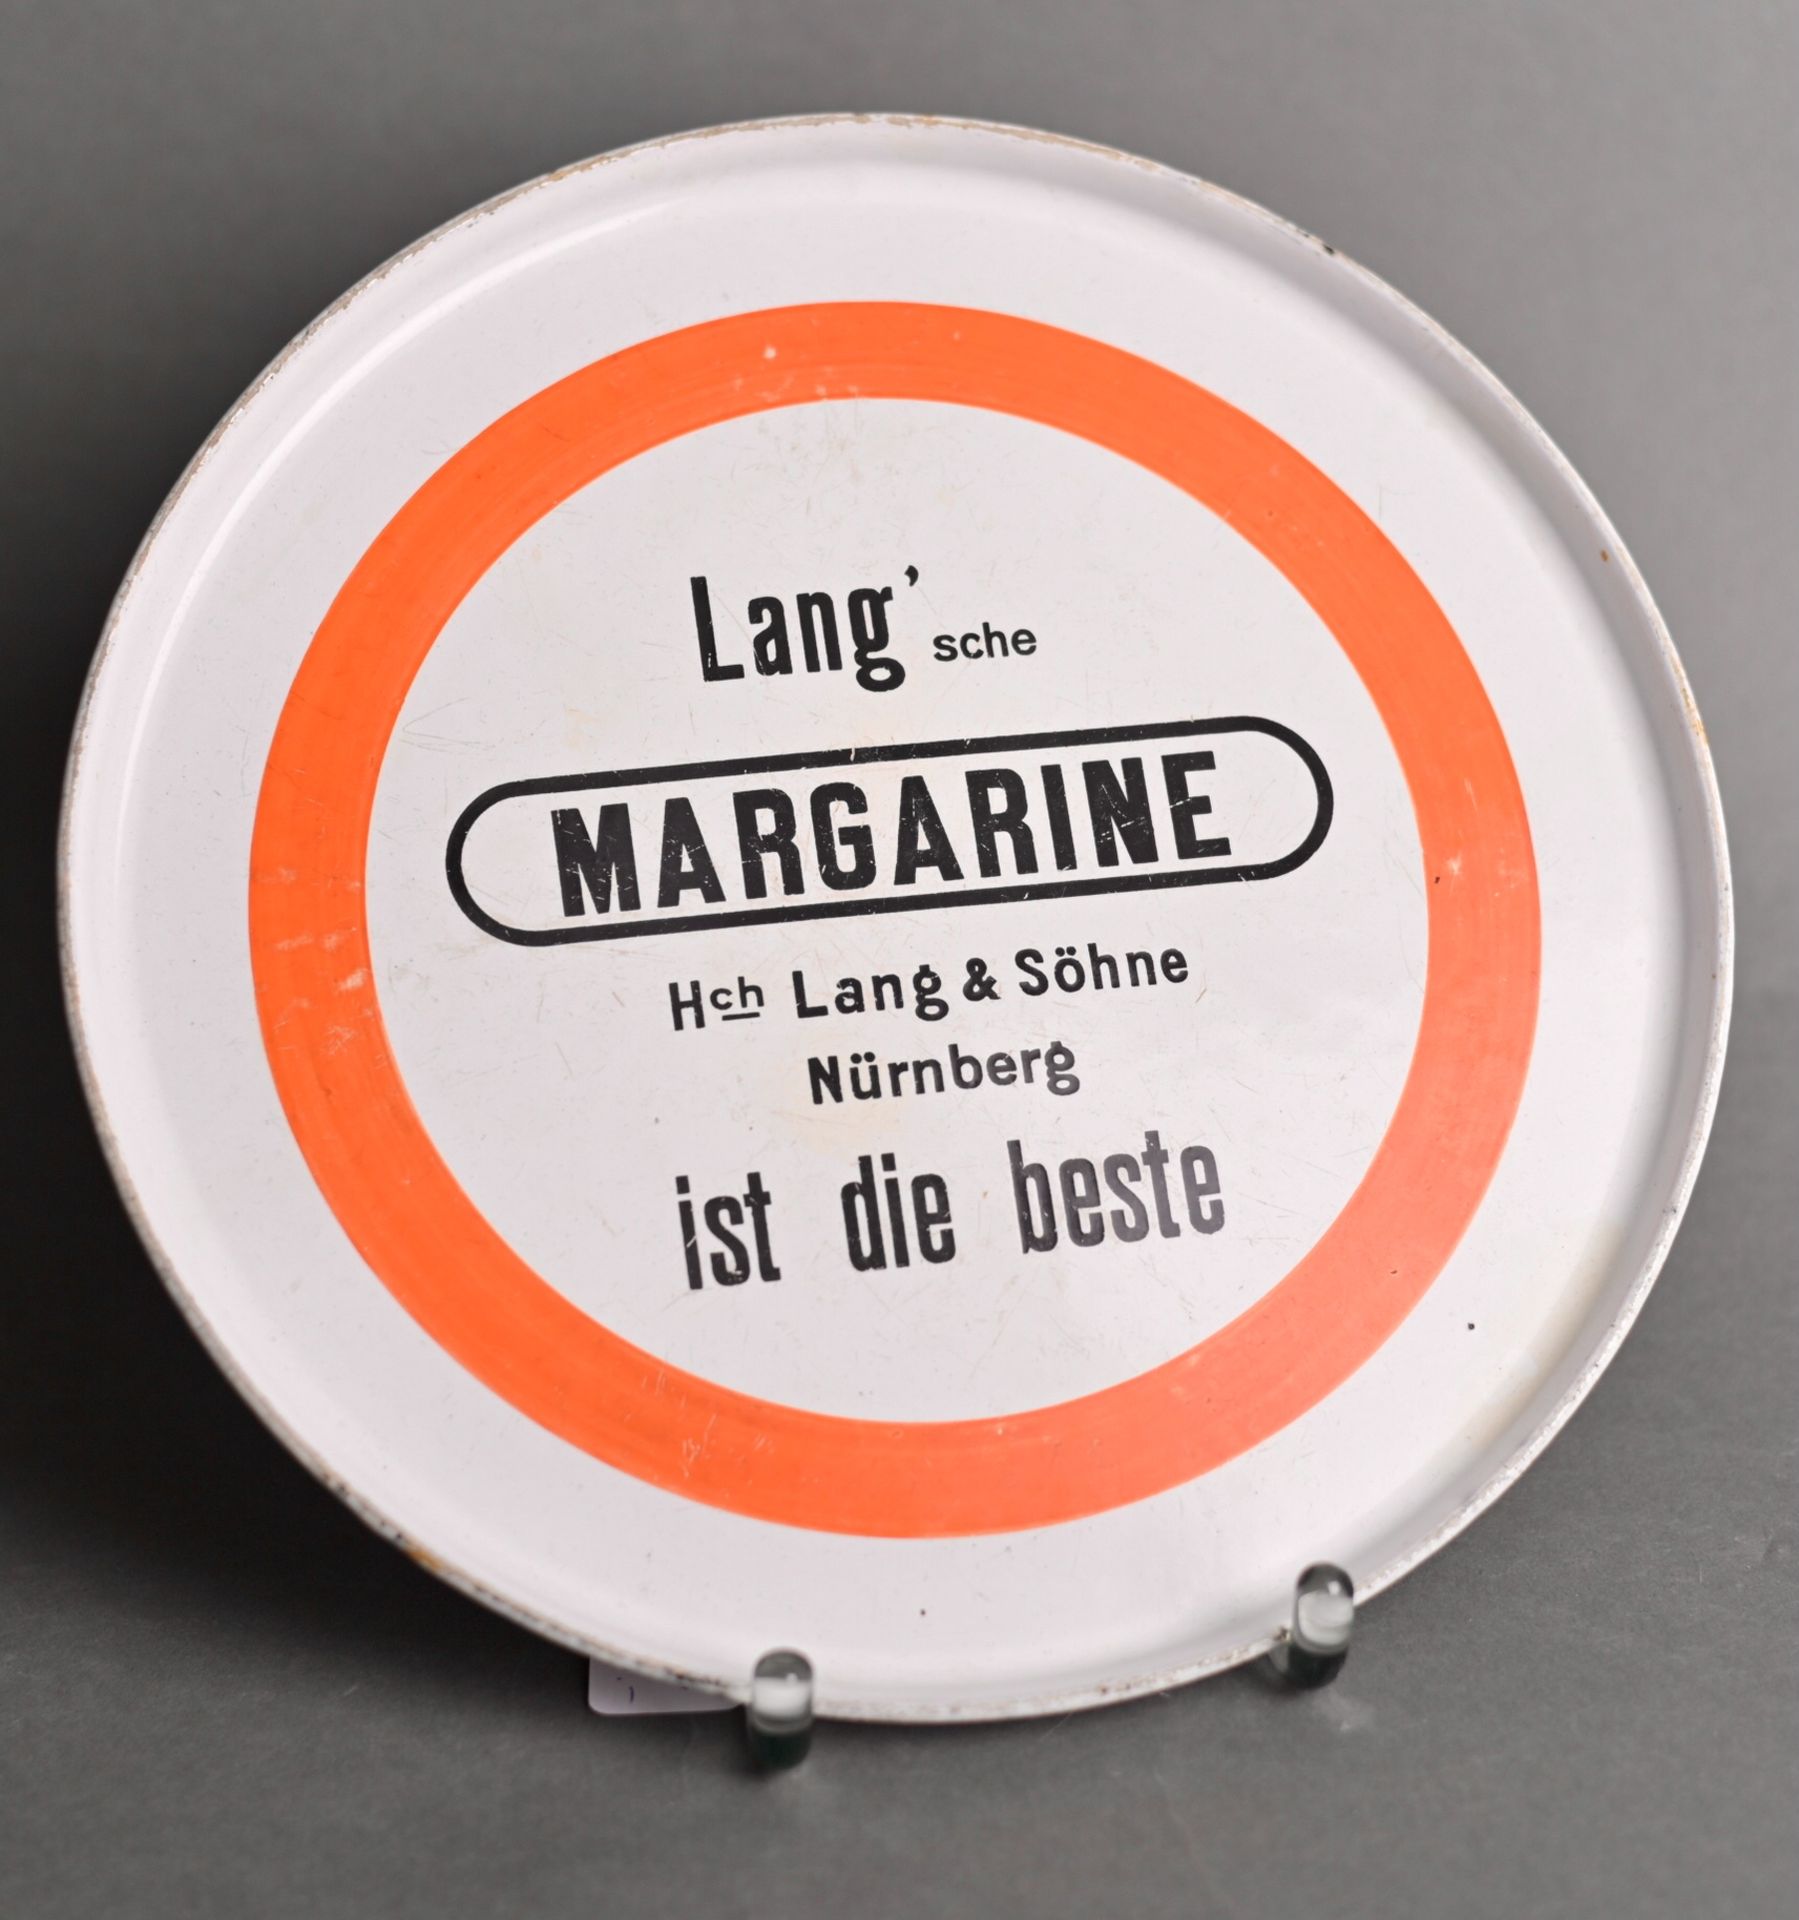 Werbe-Tablett für Margarine der Fa. Lang & Söhne Nürnberg, um 1920, Metall rundum emailliert,